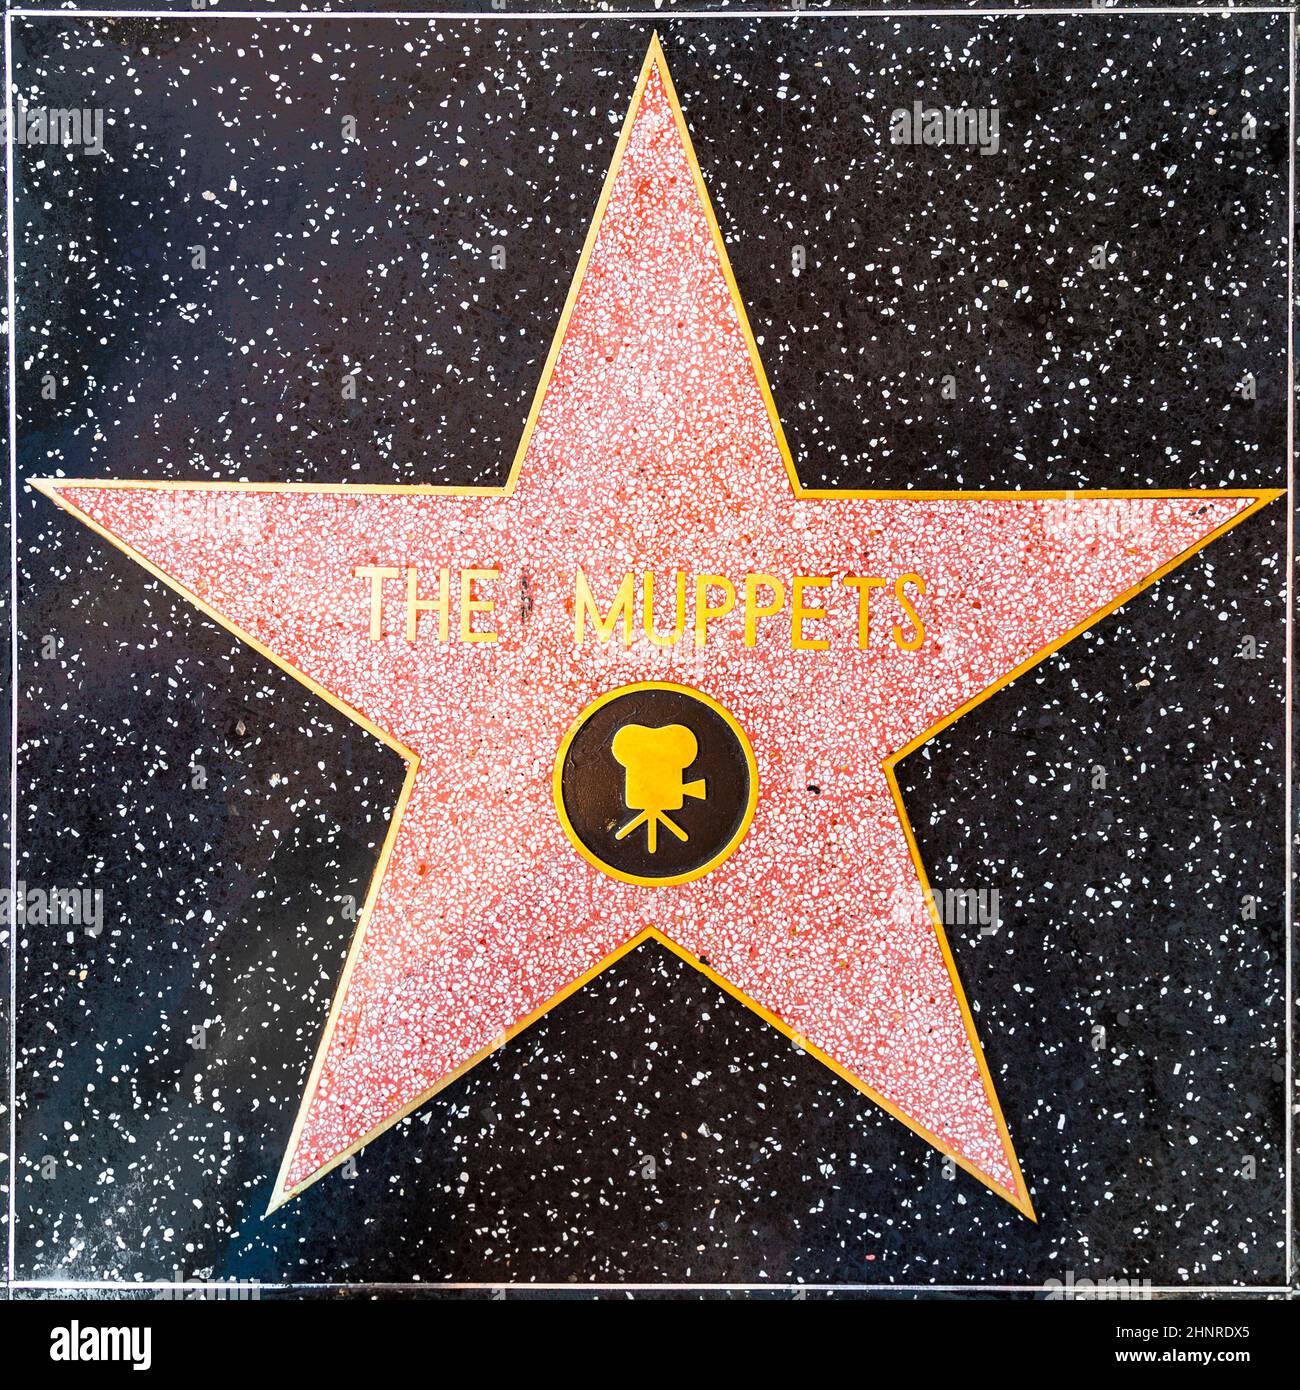 La stella dei Muppets sulla camminata di Hollywood di Fame Foto Stock